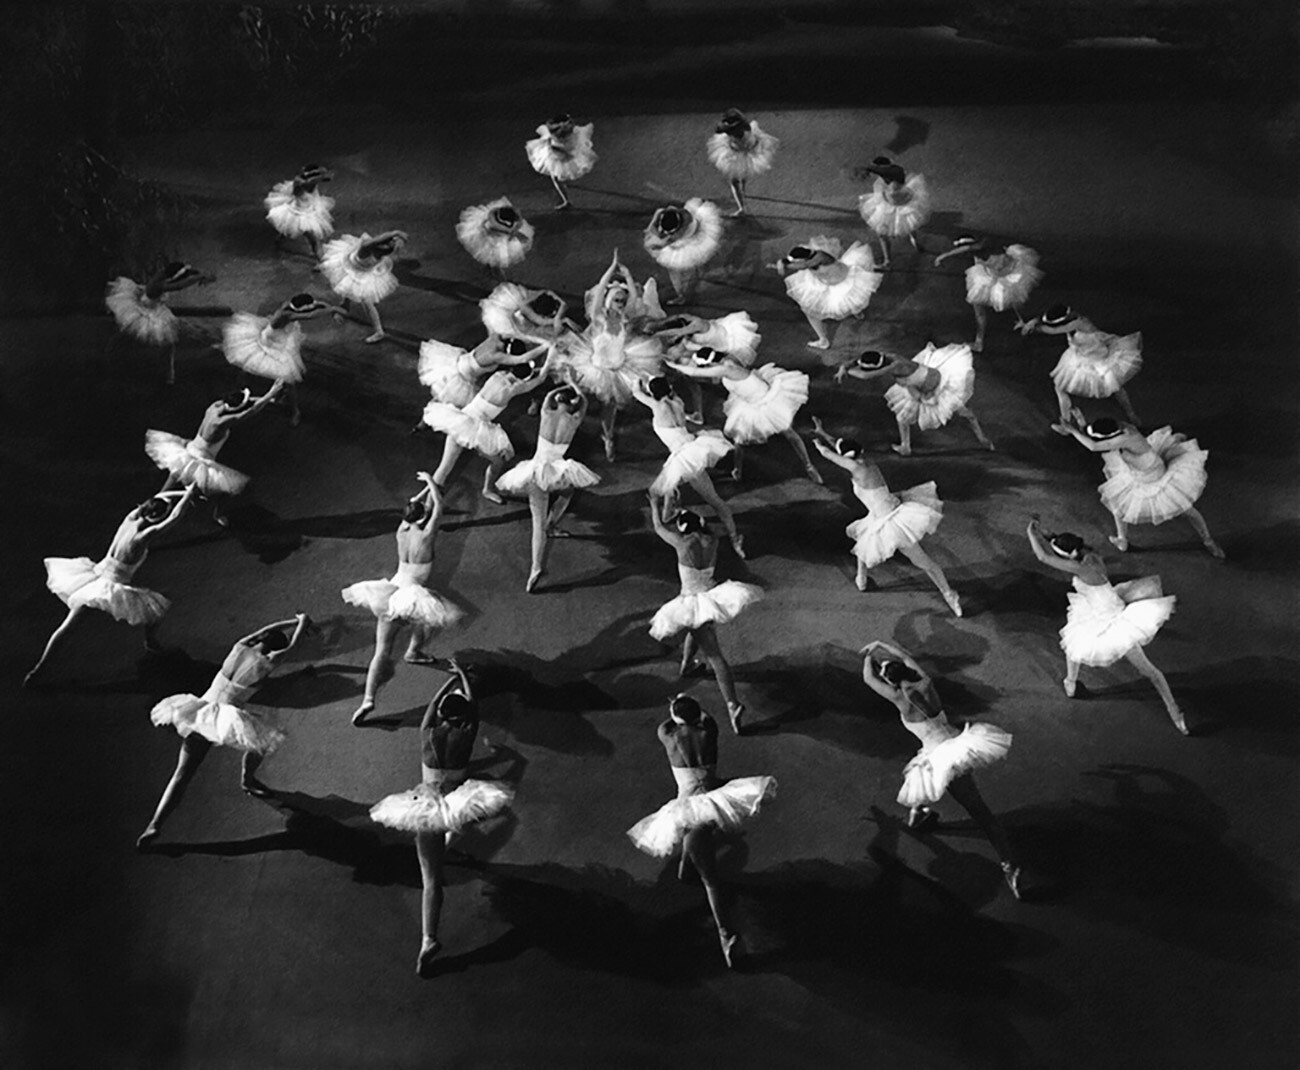  “Il Lago dei cigni” al Teatro Bolshoj di Mosca, in una rappresentazione degli anni Cinquanta del Novecento
